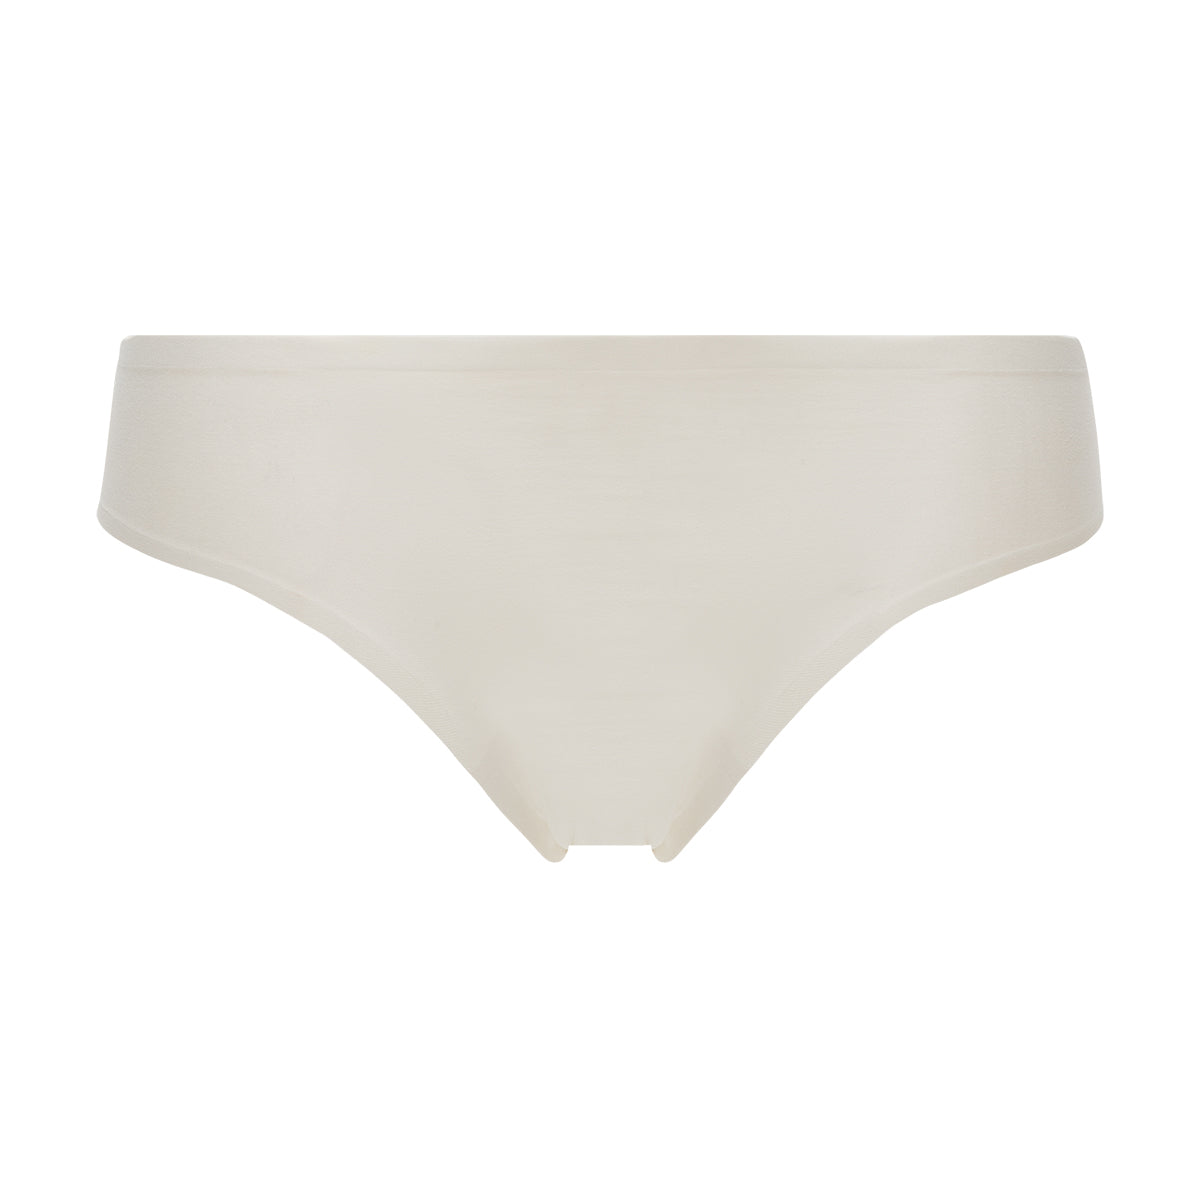 H and M Underwear Women's Cotton Underwear Soft Stretch Bikini